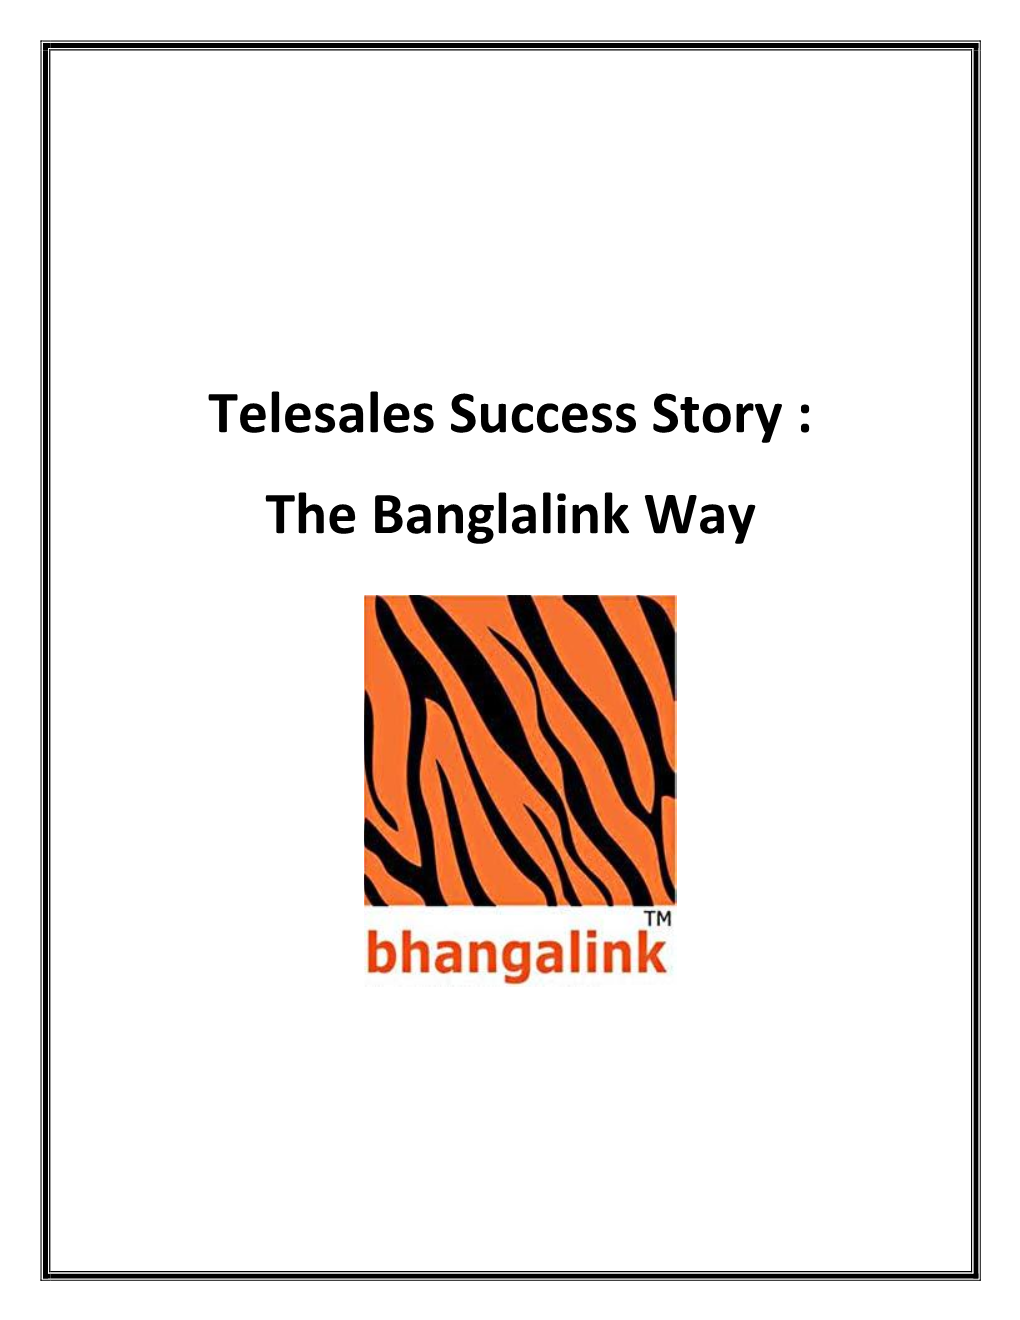 The Banglalink Way